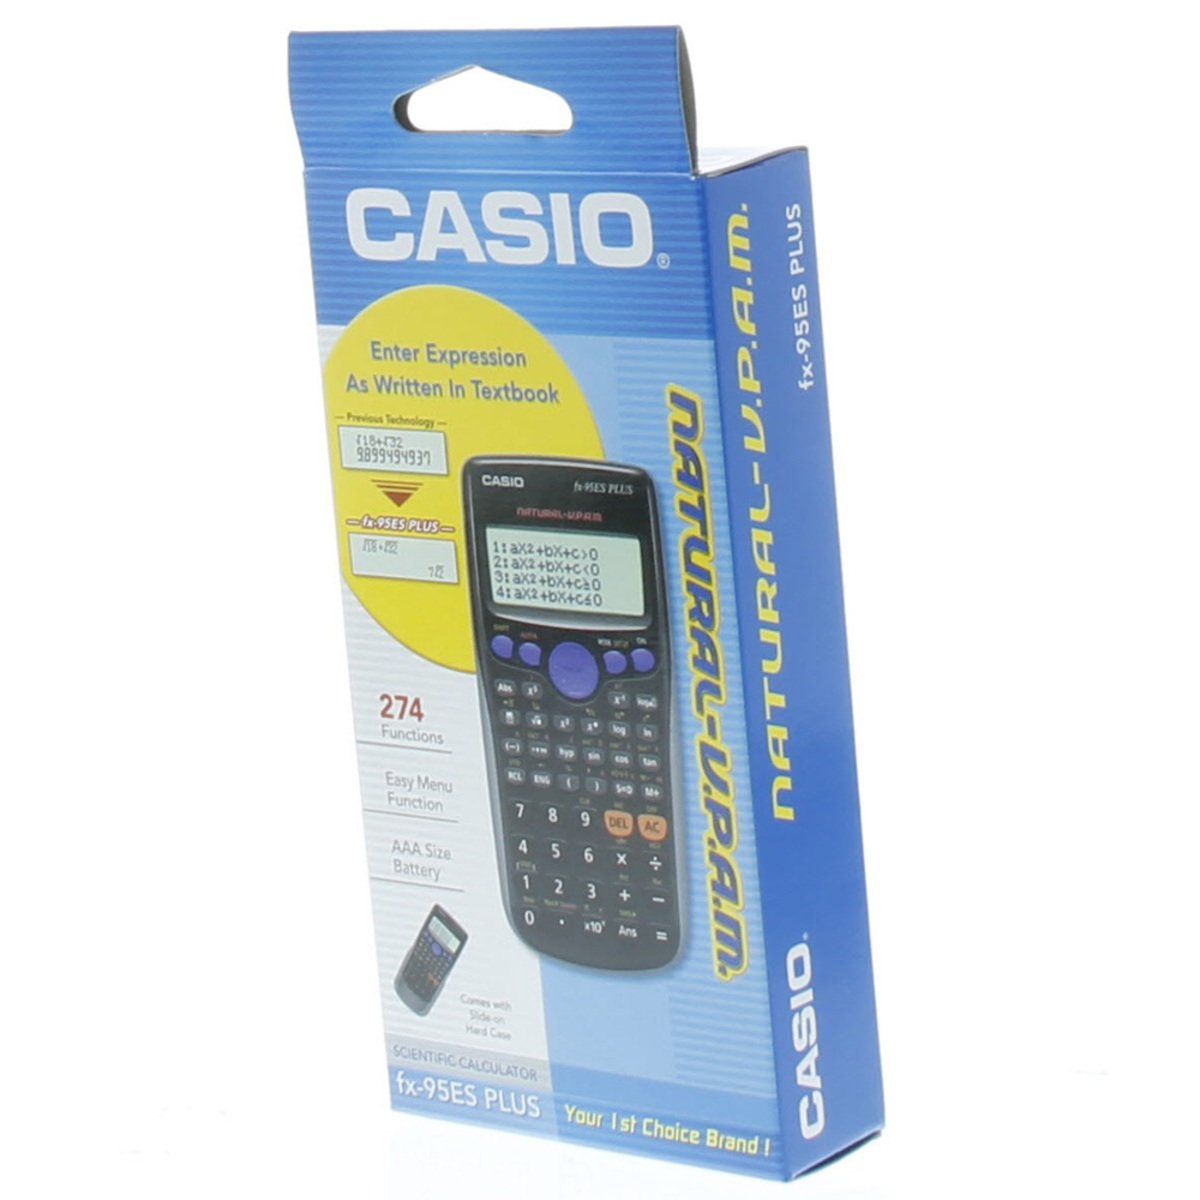 Casio Scientific Calculator FX-95ES PLUS